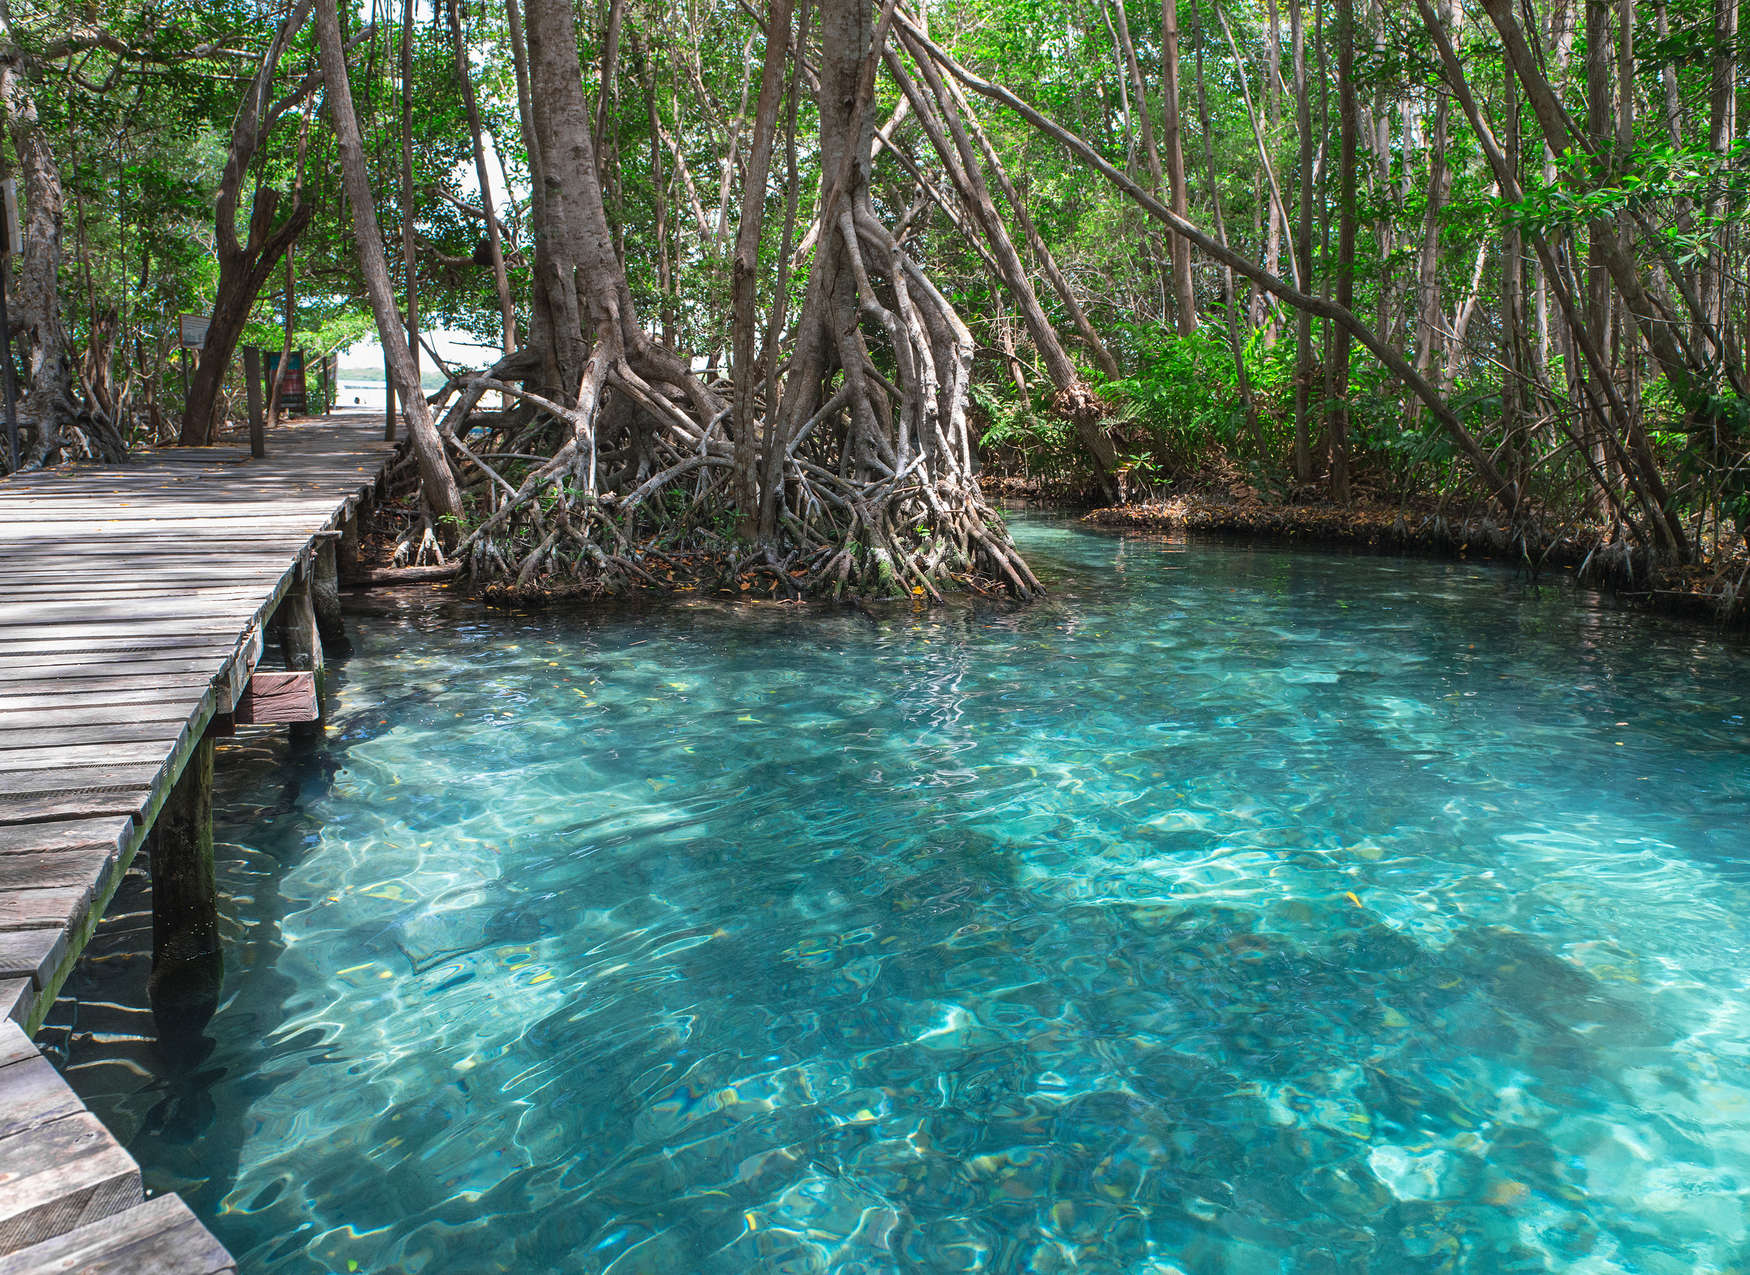             Holzweg über einen See im Dschungel – Blau, Braun, Grün
        